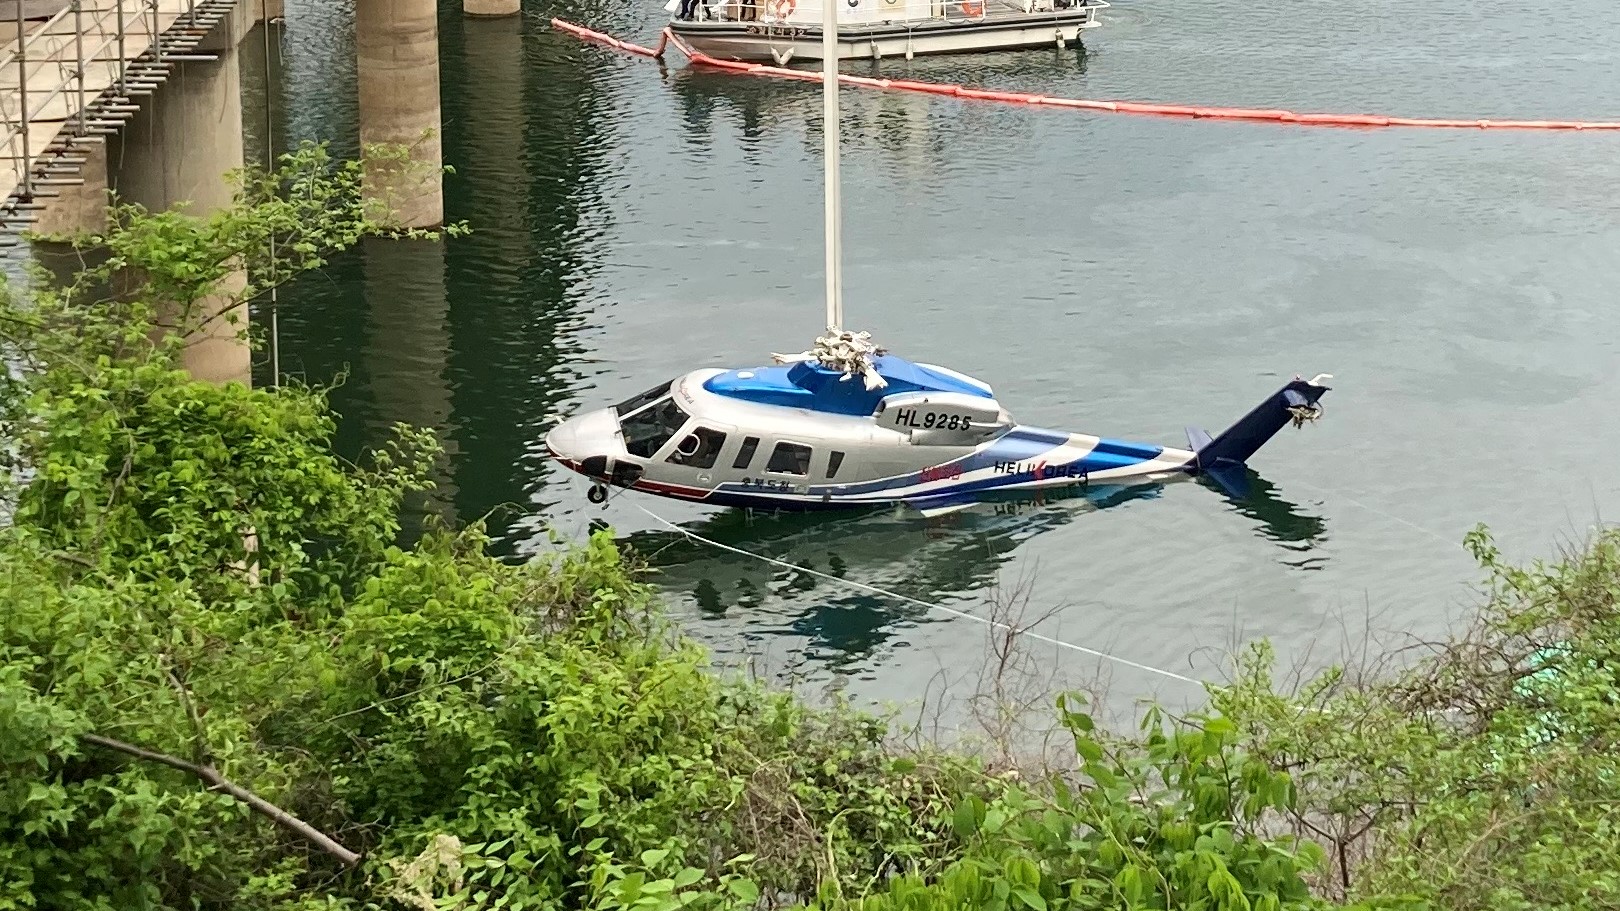 충북 청주 대청호에 추락한 산불진화용 헬기가 인양되고 있다.